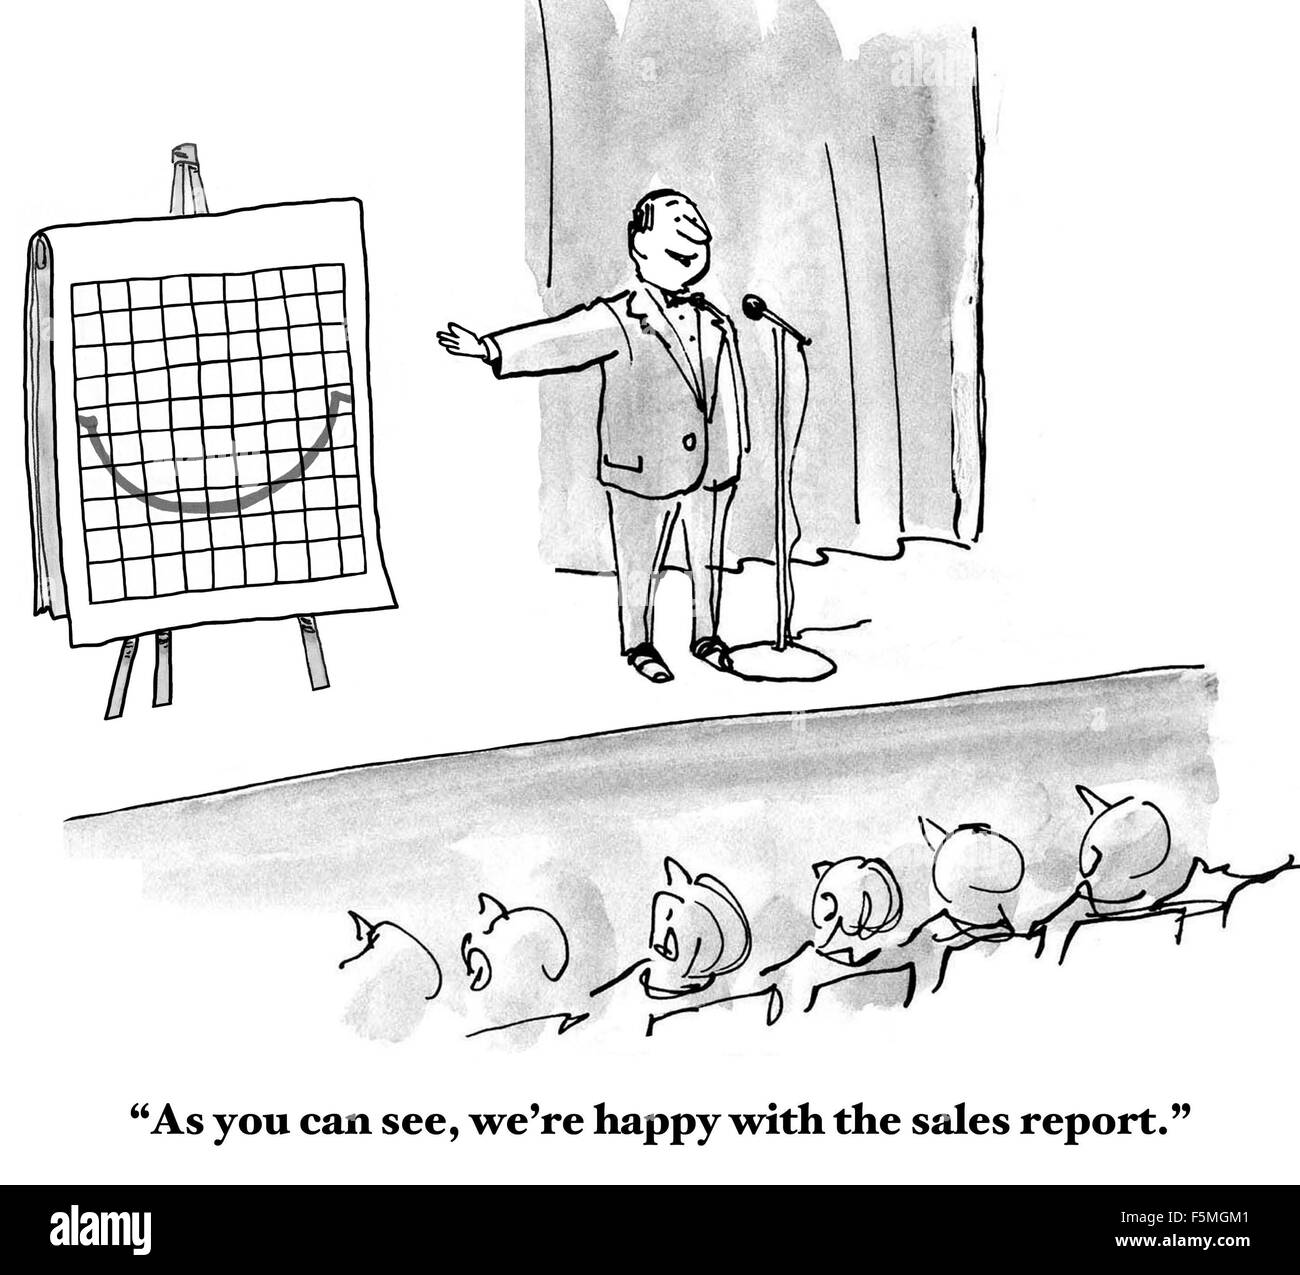 Business cartoon di un grafico con una linea che appare come un "sorriso". "Come si può vedere, siamo soddisfatti della relazione di vendita'. Foto Stock